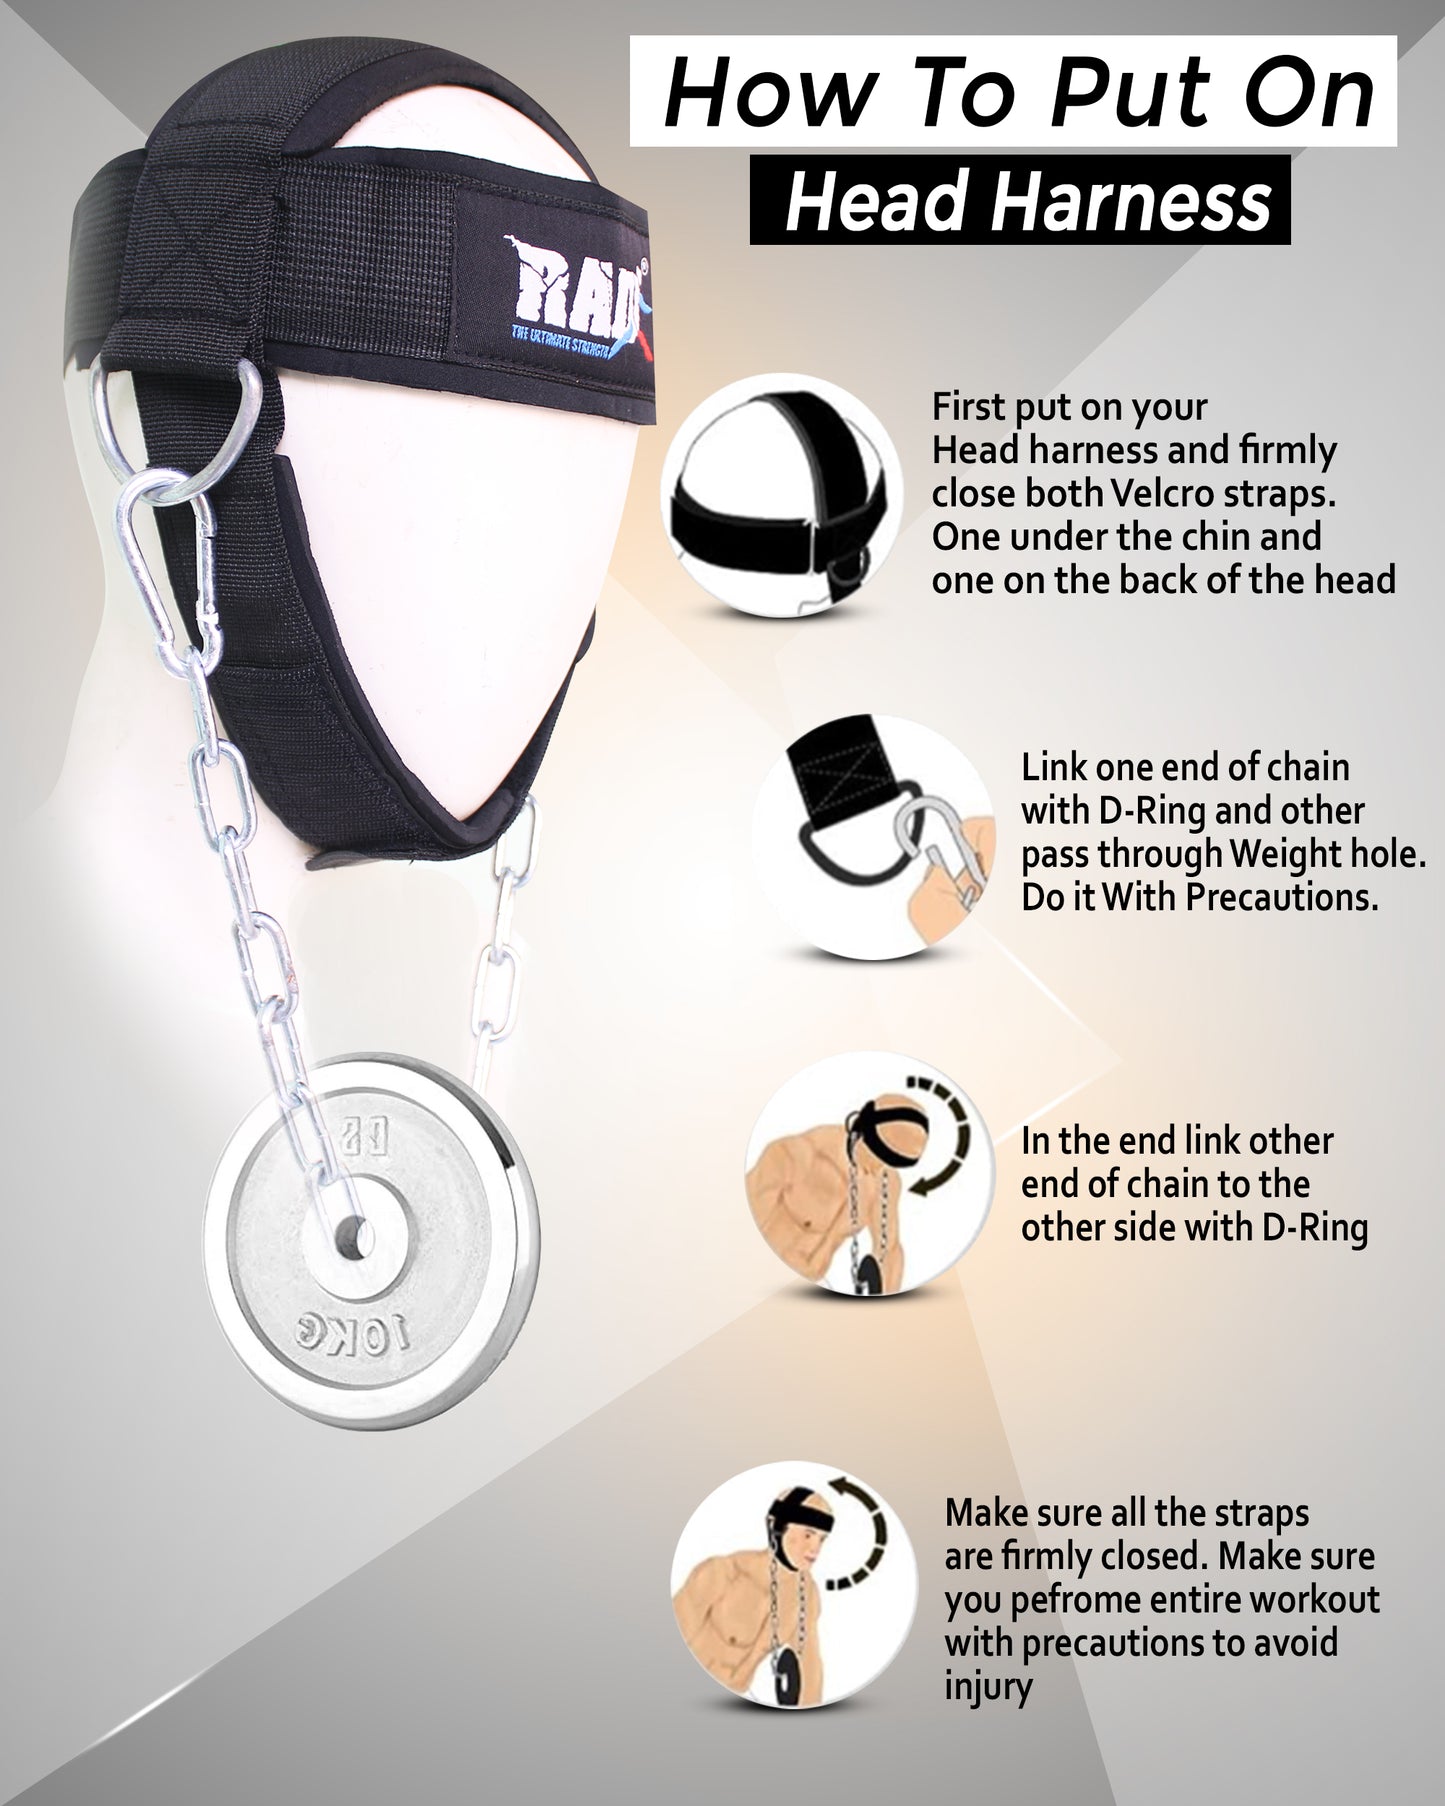 Neck Head Harness - RAD Ultimate